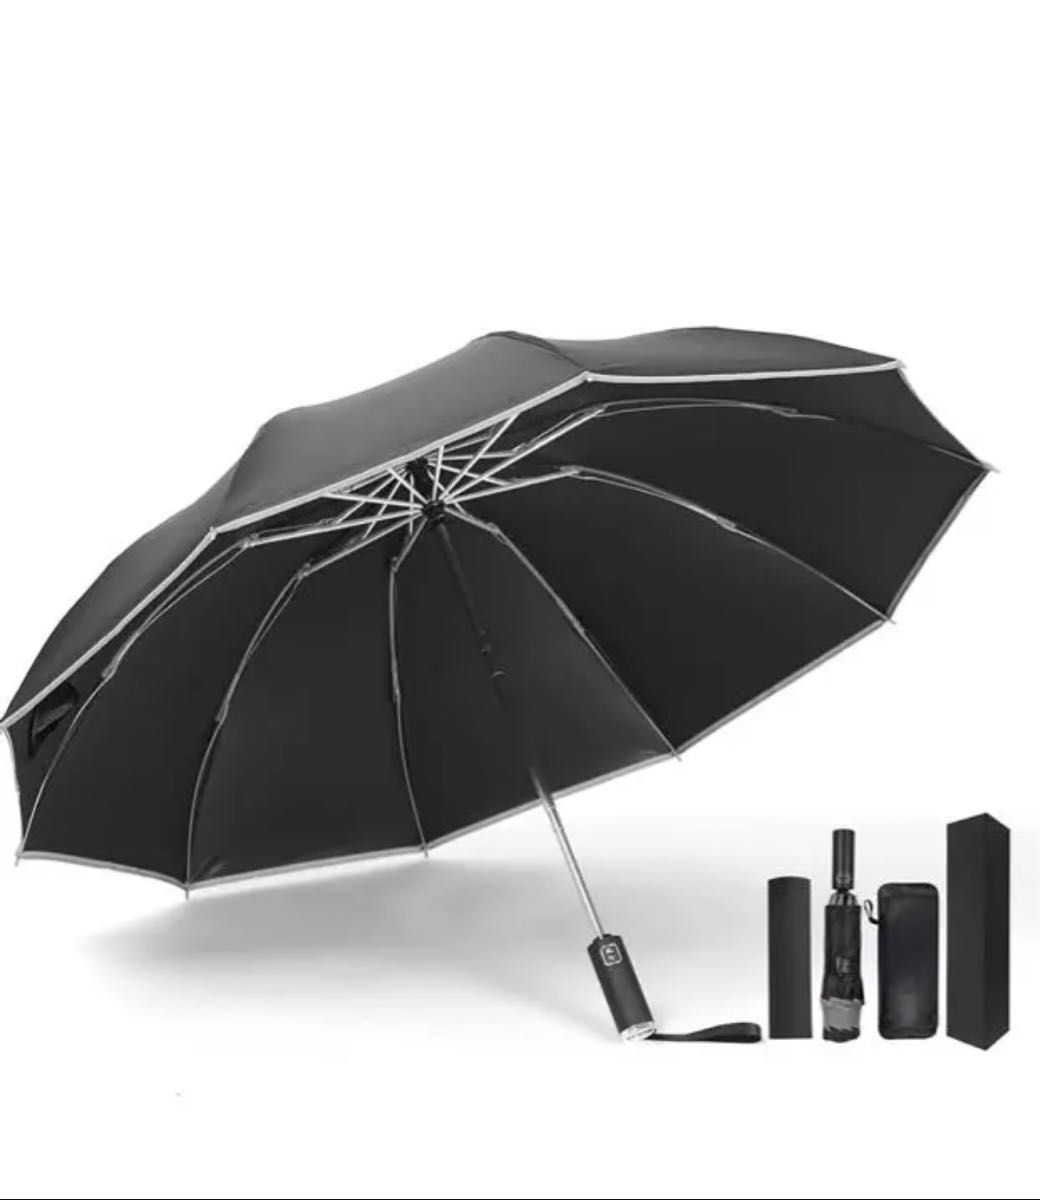 10本骨逆折り式 & 反射テープ付き＆ 完全遮光 傘 晴雨兼用傘 逆折り式折りたたみ傘 UPF50+ ワンタッチ 自動開閉傘 UV